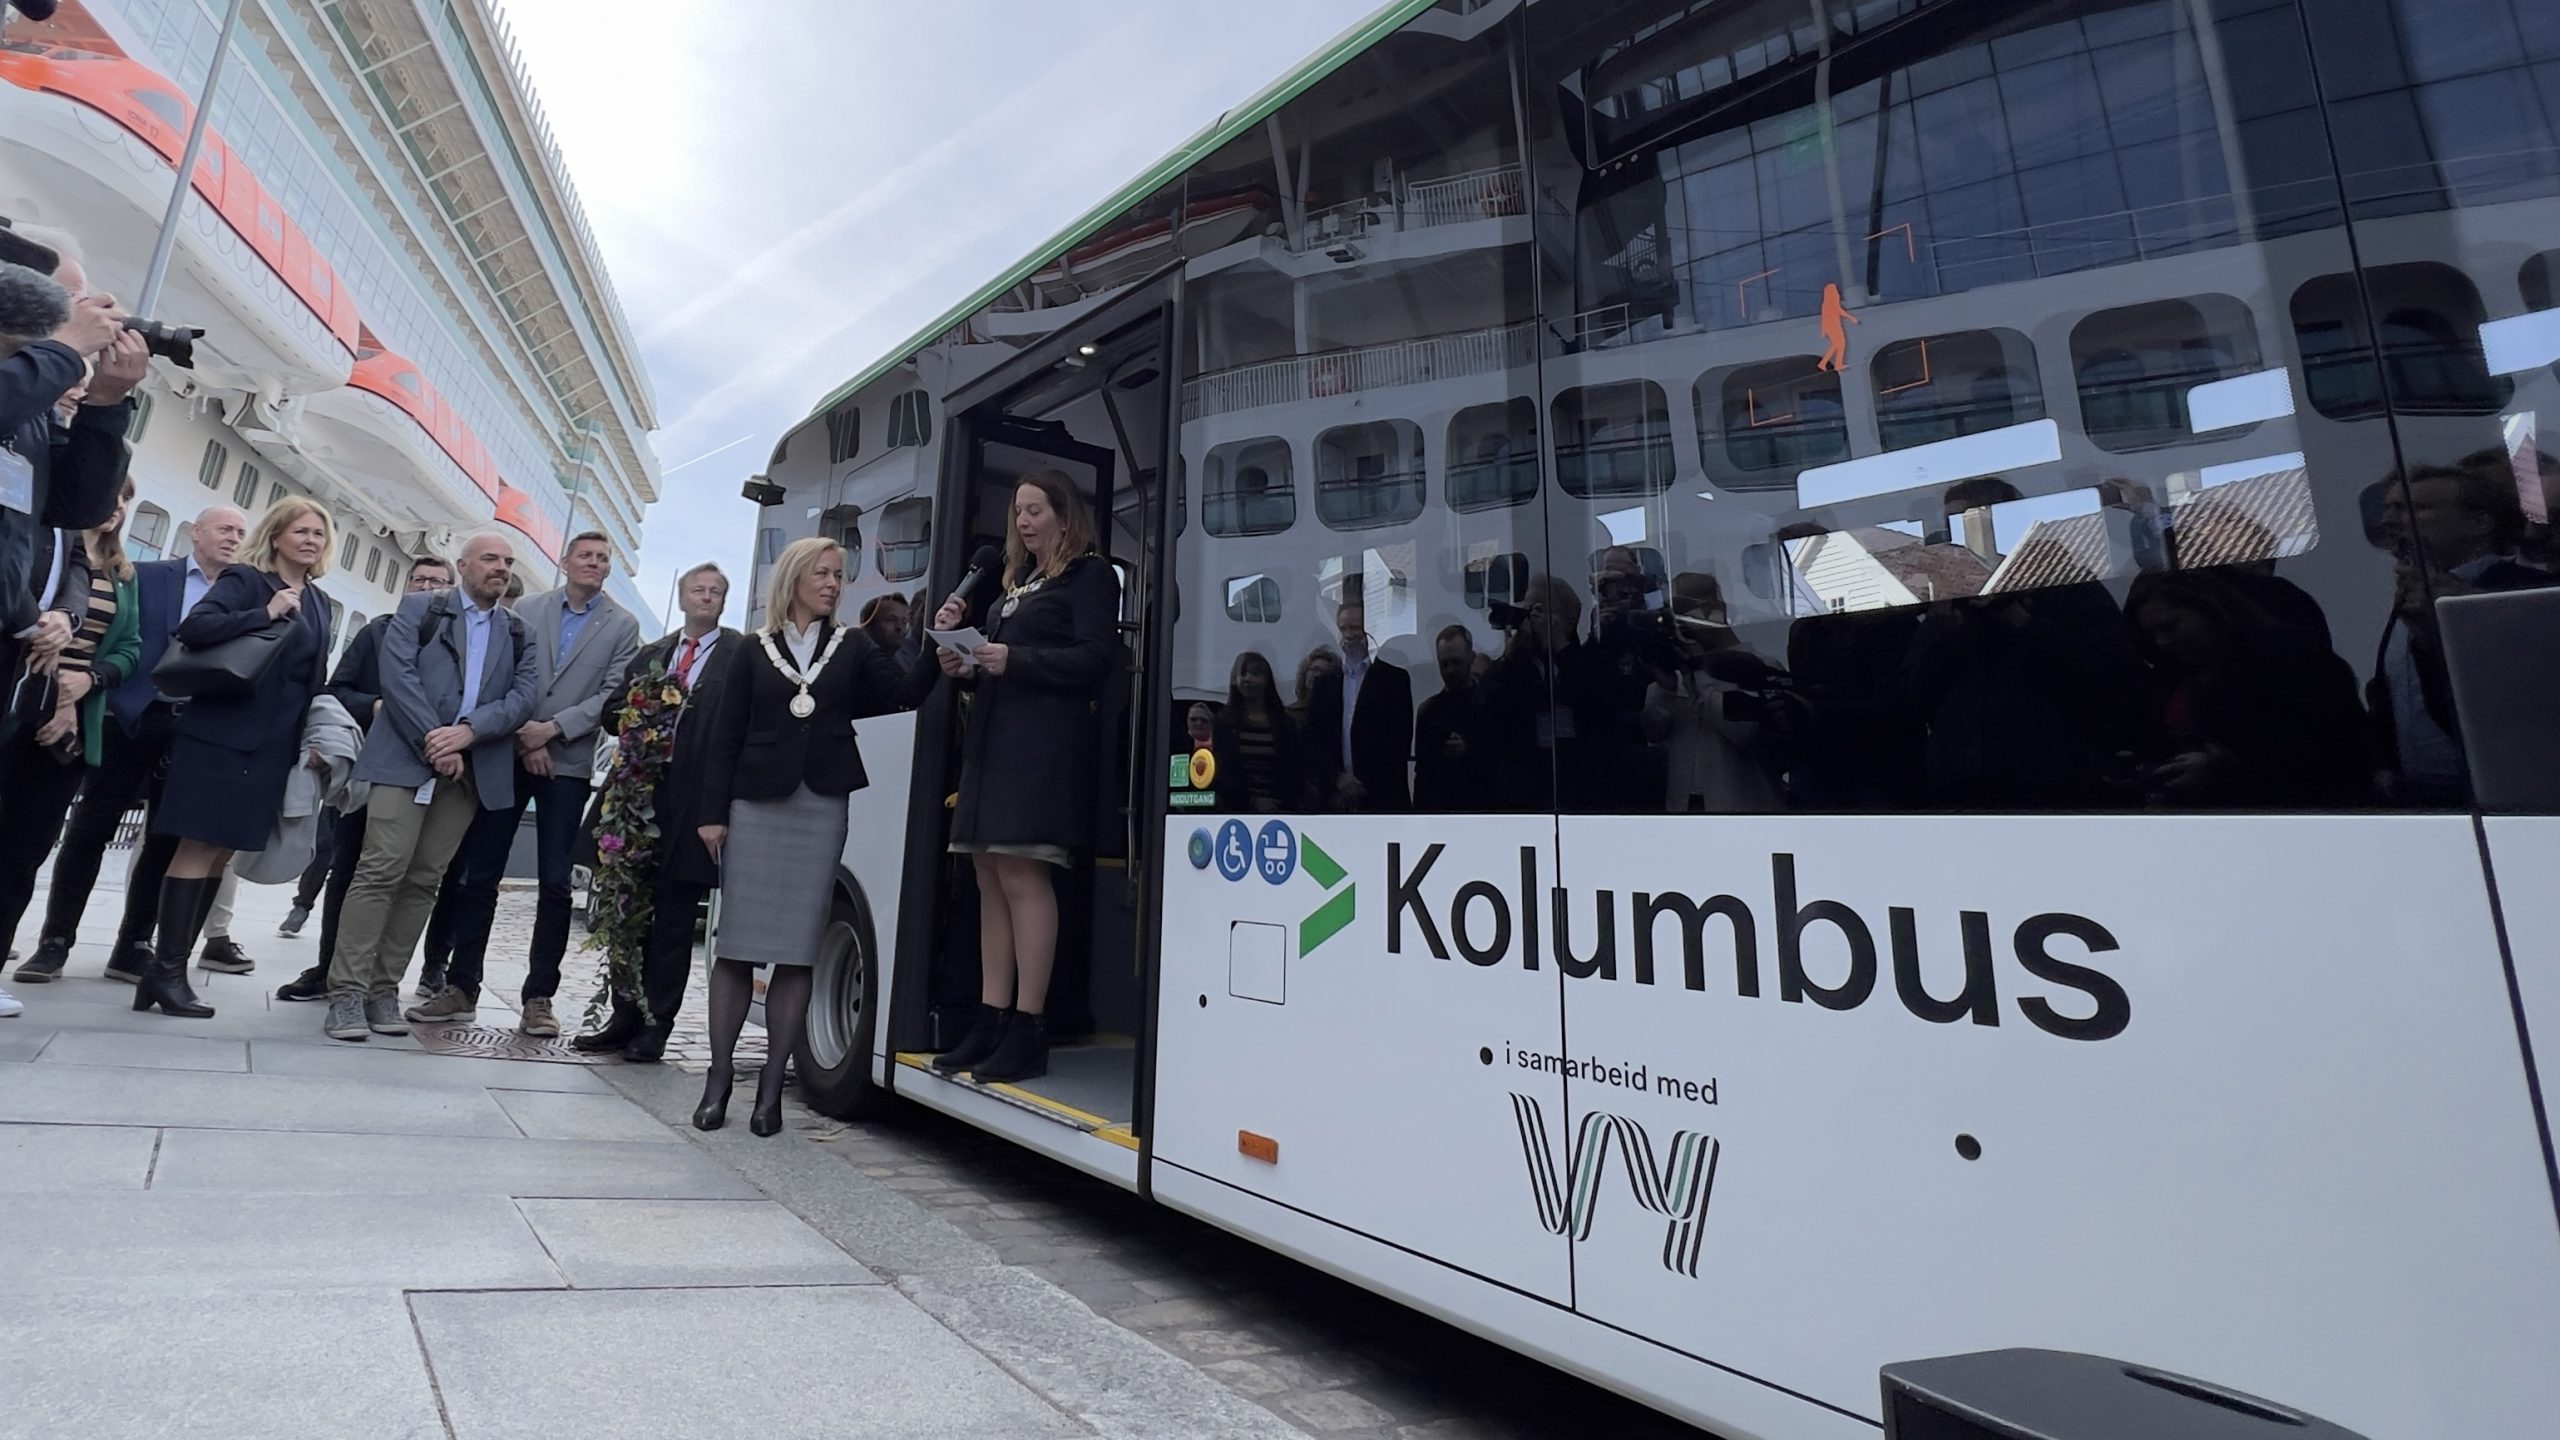 Autonomus e-Atak, primul autobuz electric autonom operat în serviciul de transport public din Europa